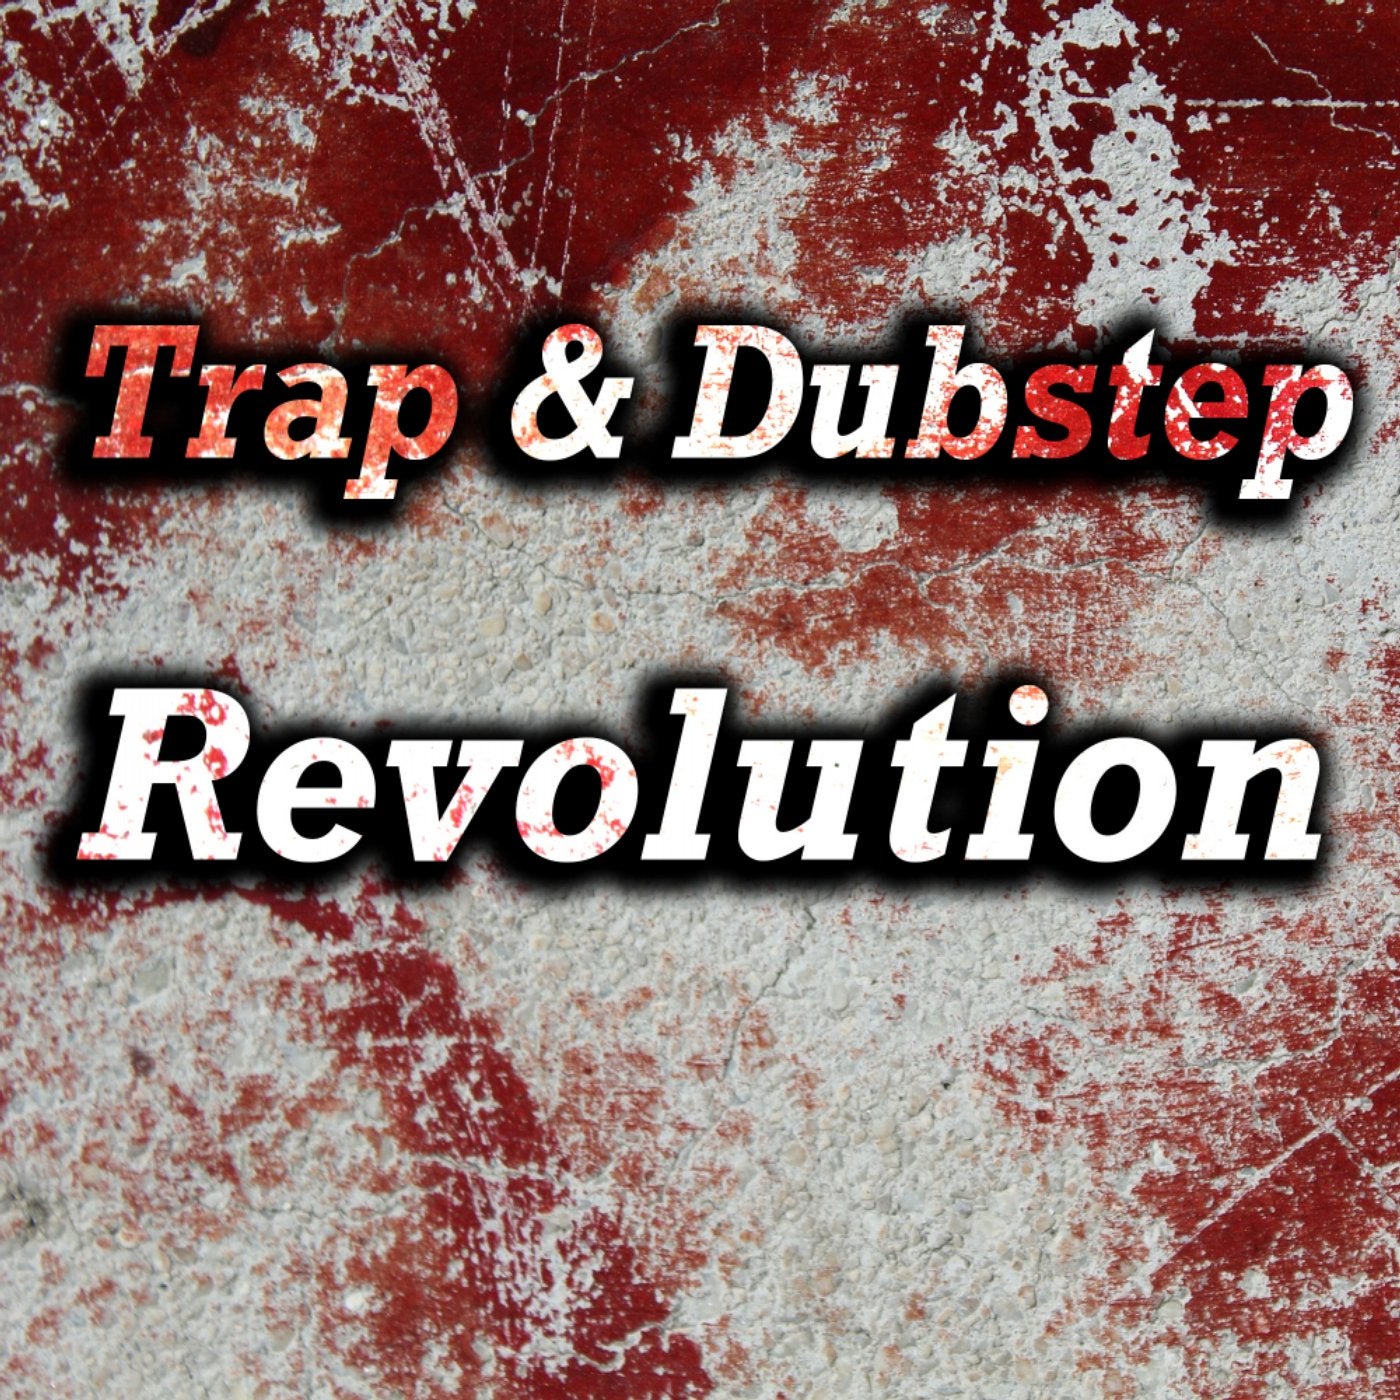 Trap & Dubstep Revolution